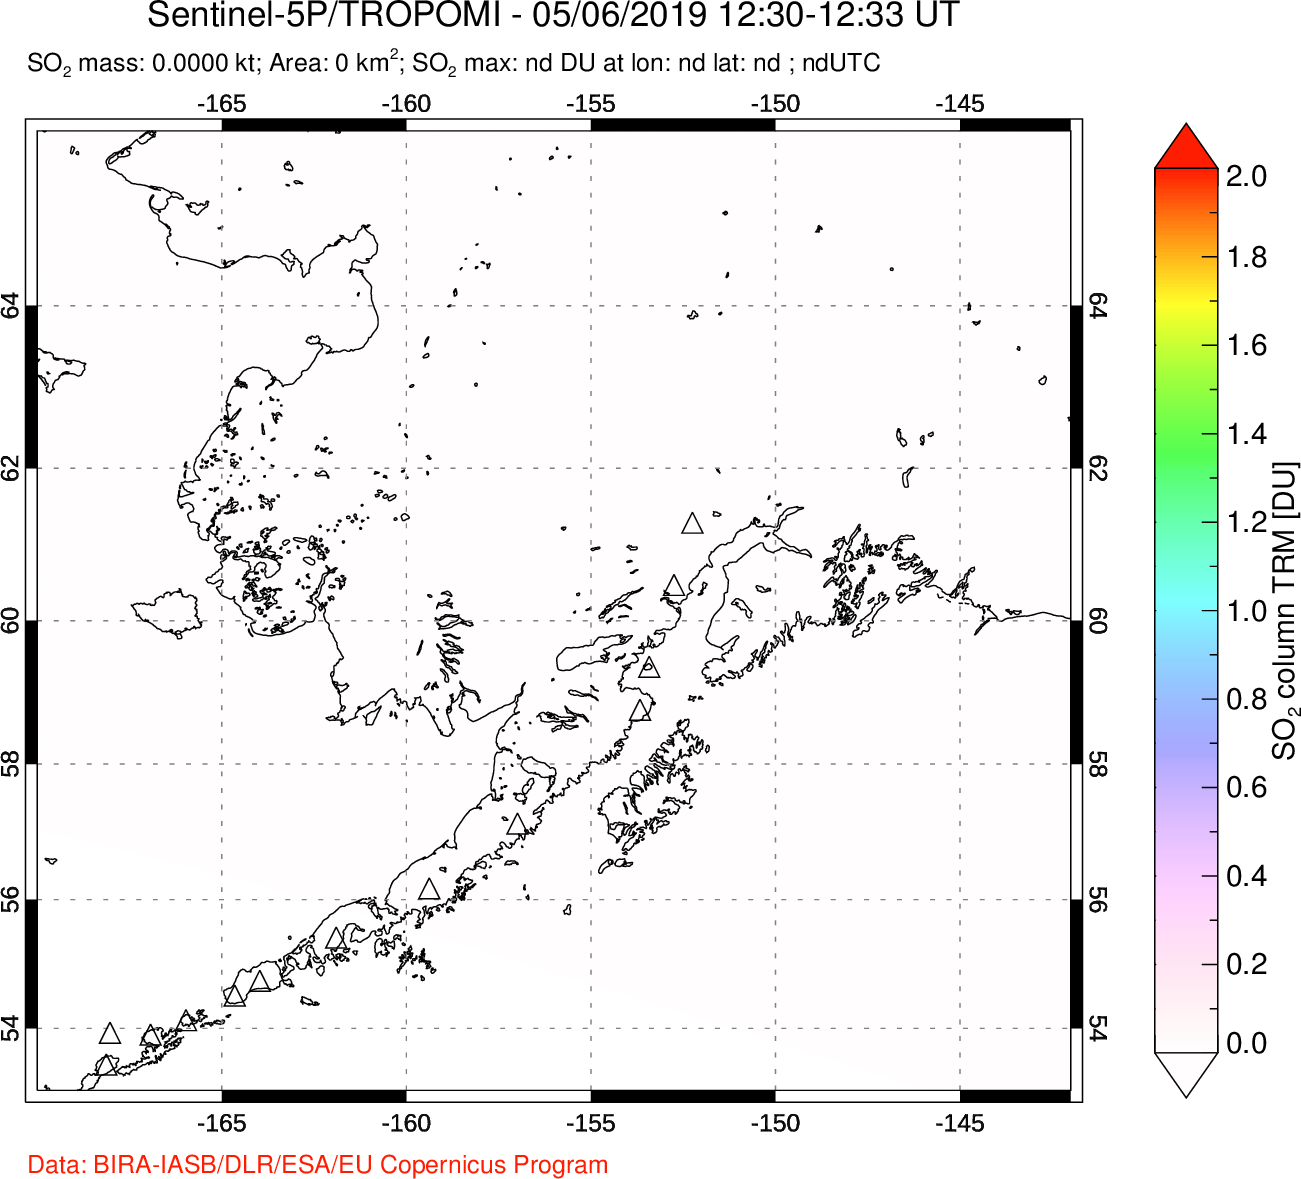 A sulfur dioxide image over Alaska, USA on May 06, 2019.